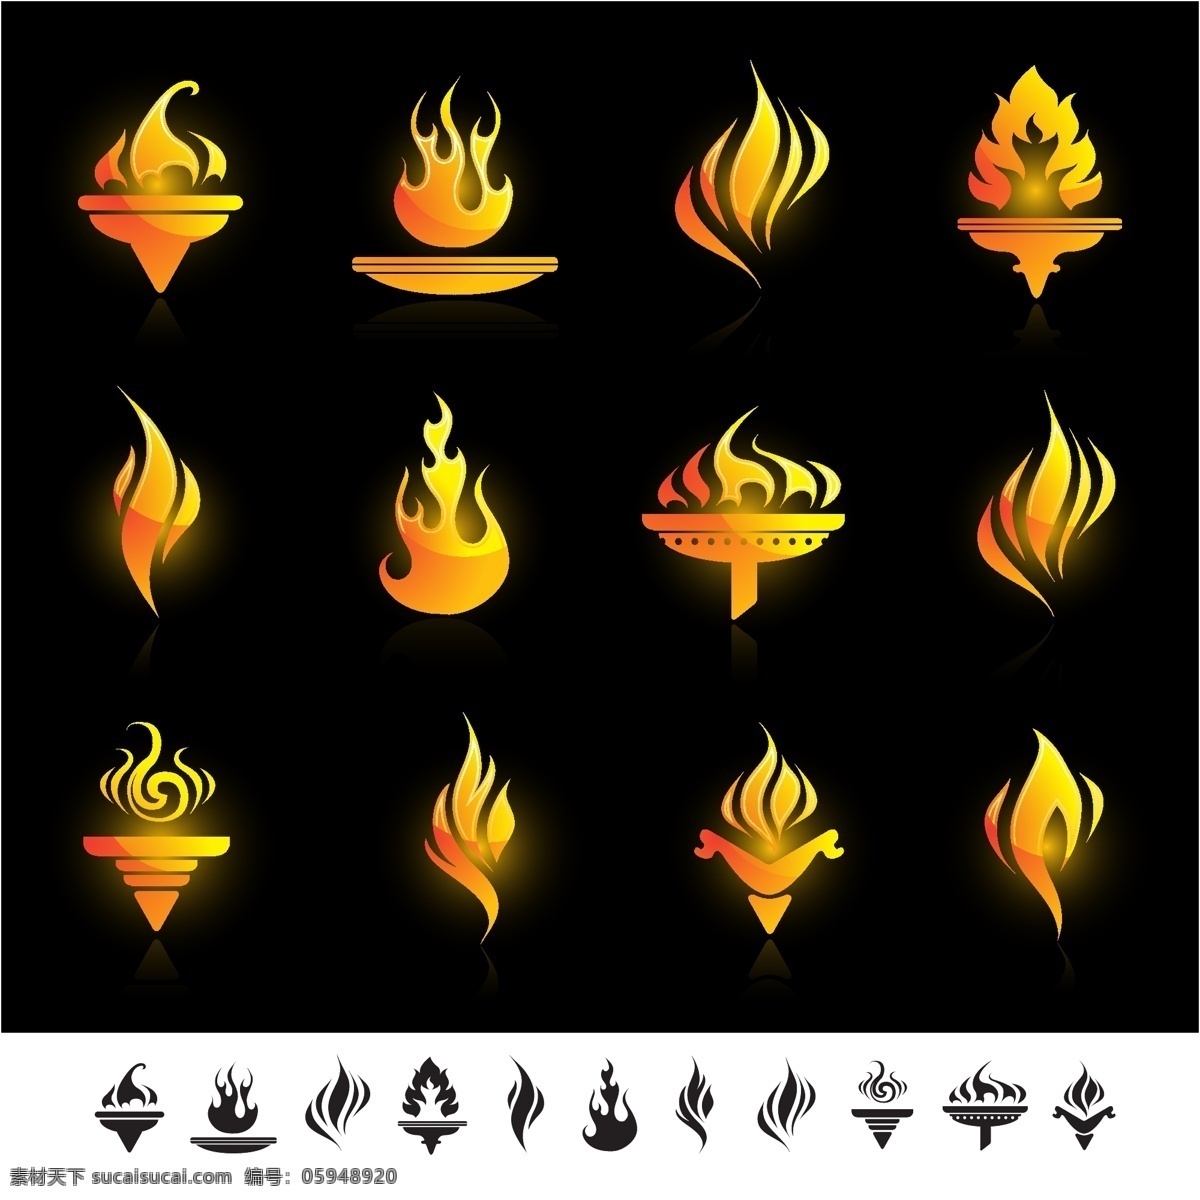 款 燃烧 火炬 矢量 logo 标志 抽象 火焰 简洁 金色 矢量火炬 矢量图